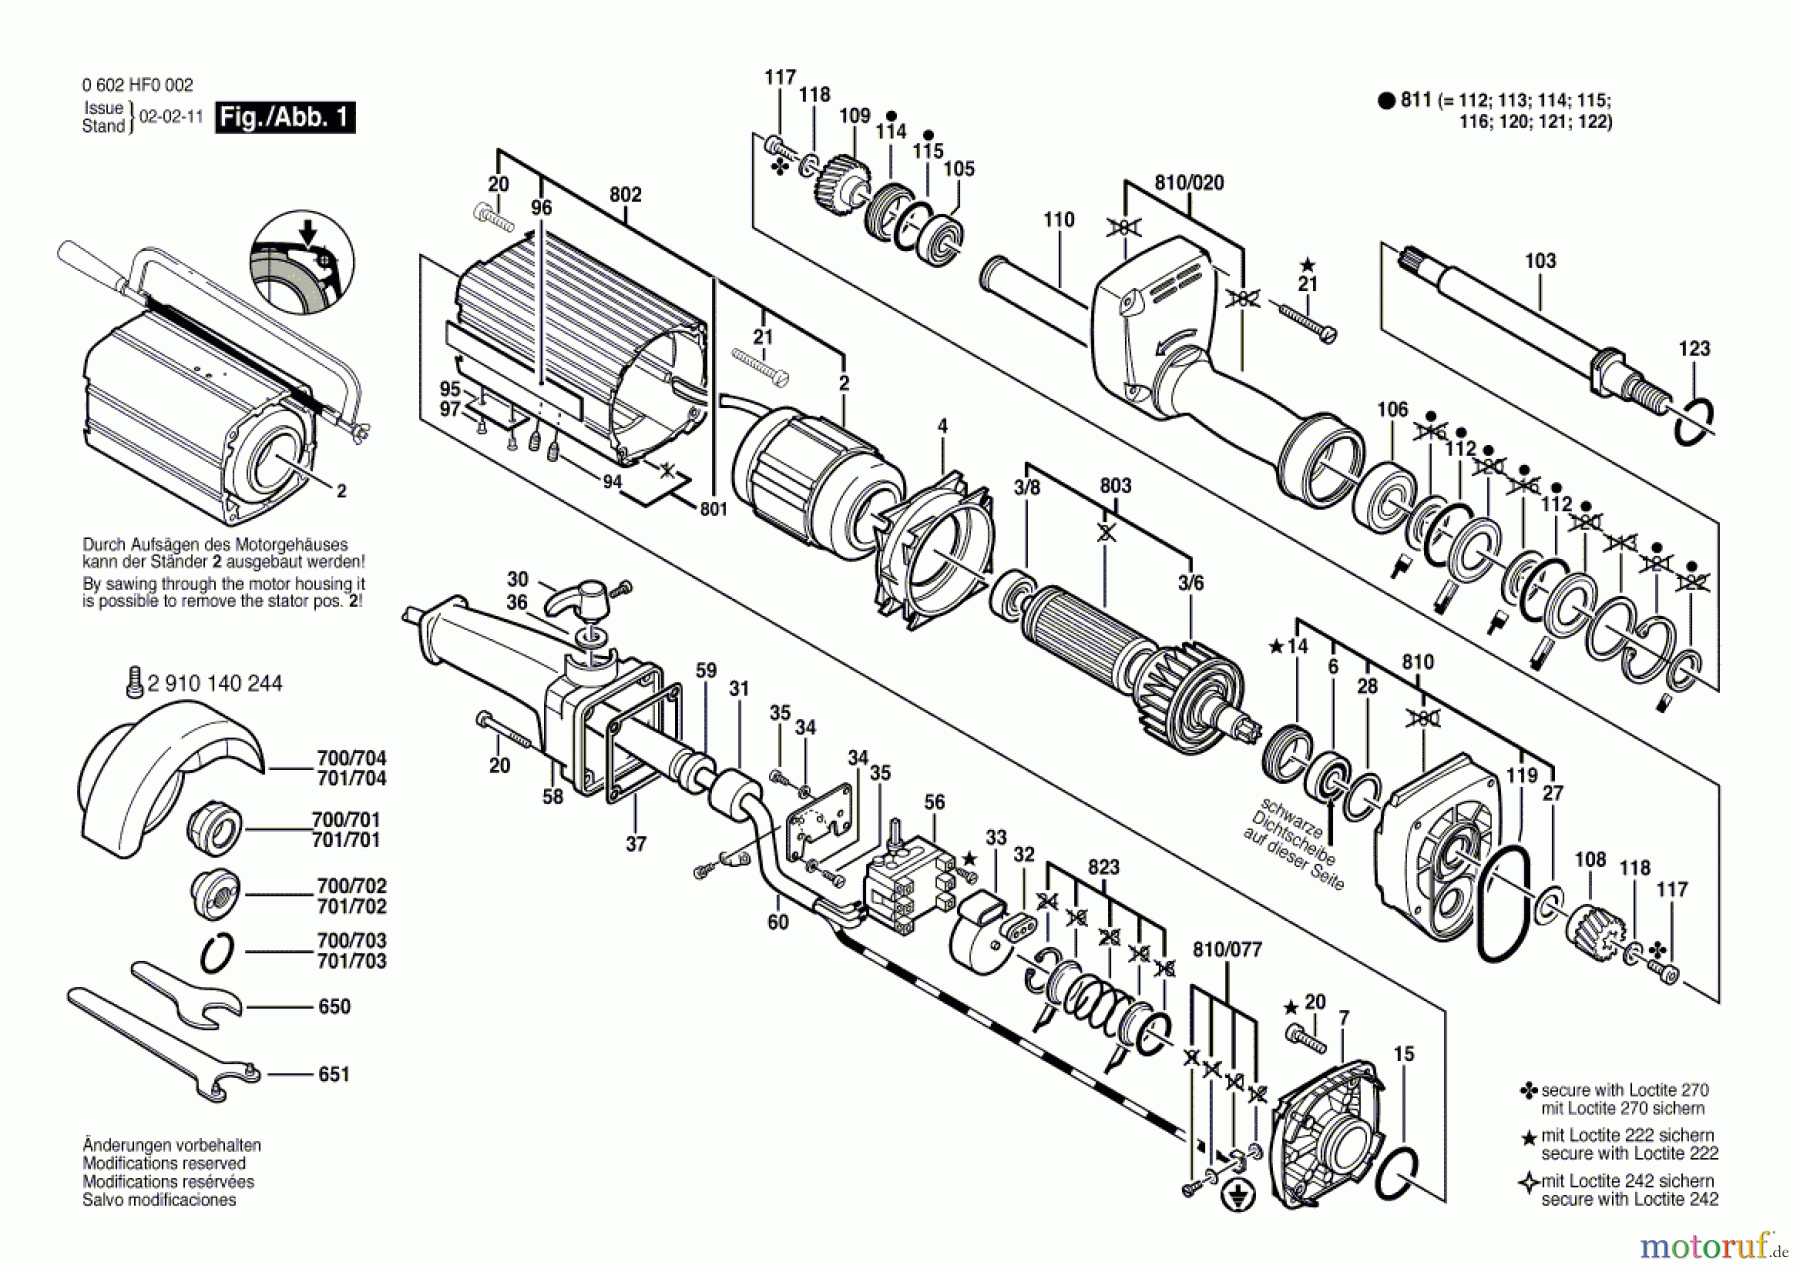  Bosch Werkzeug Hf-Geradschleifer GR.85 Seite 1